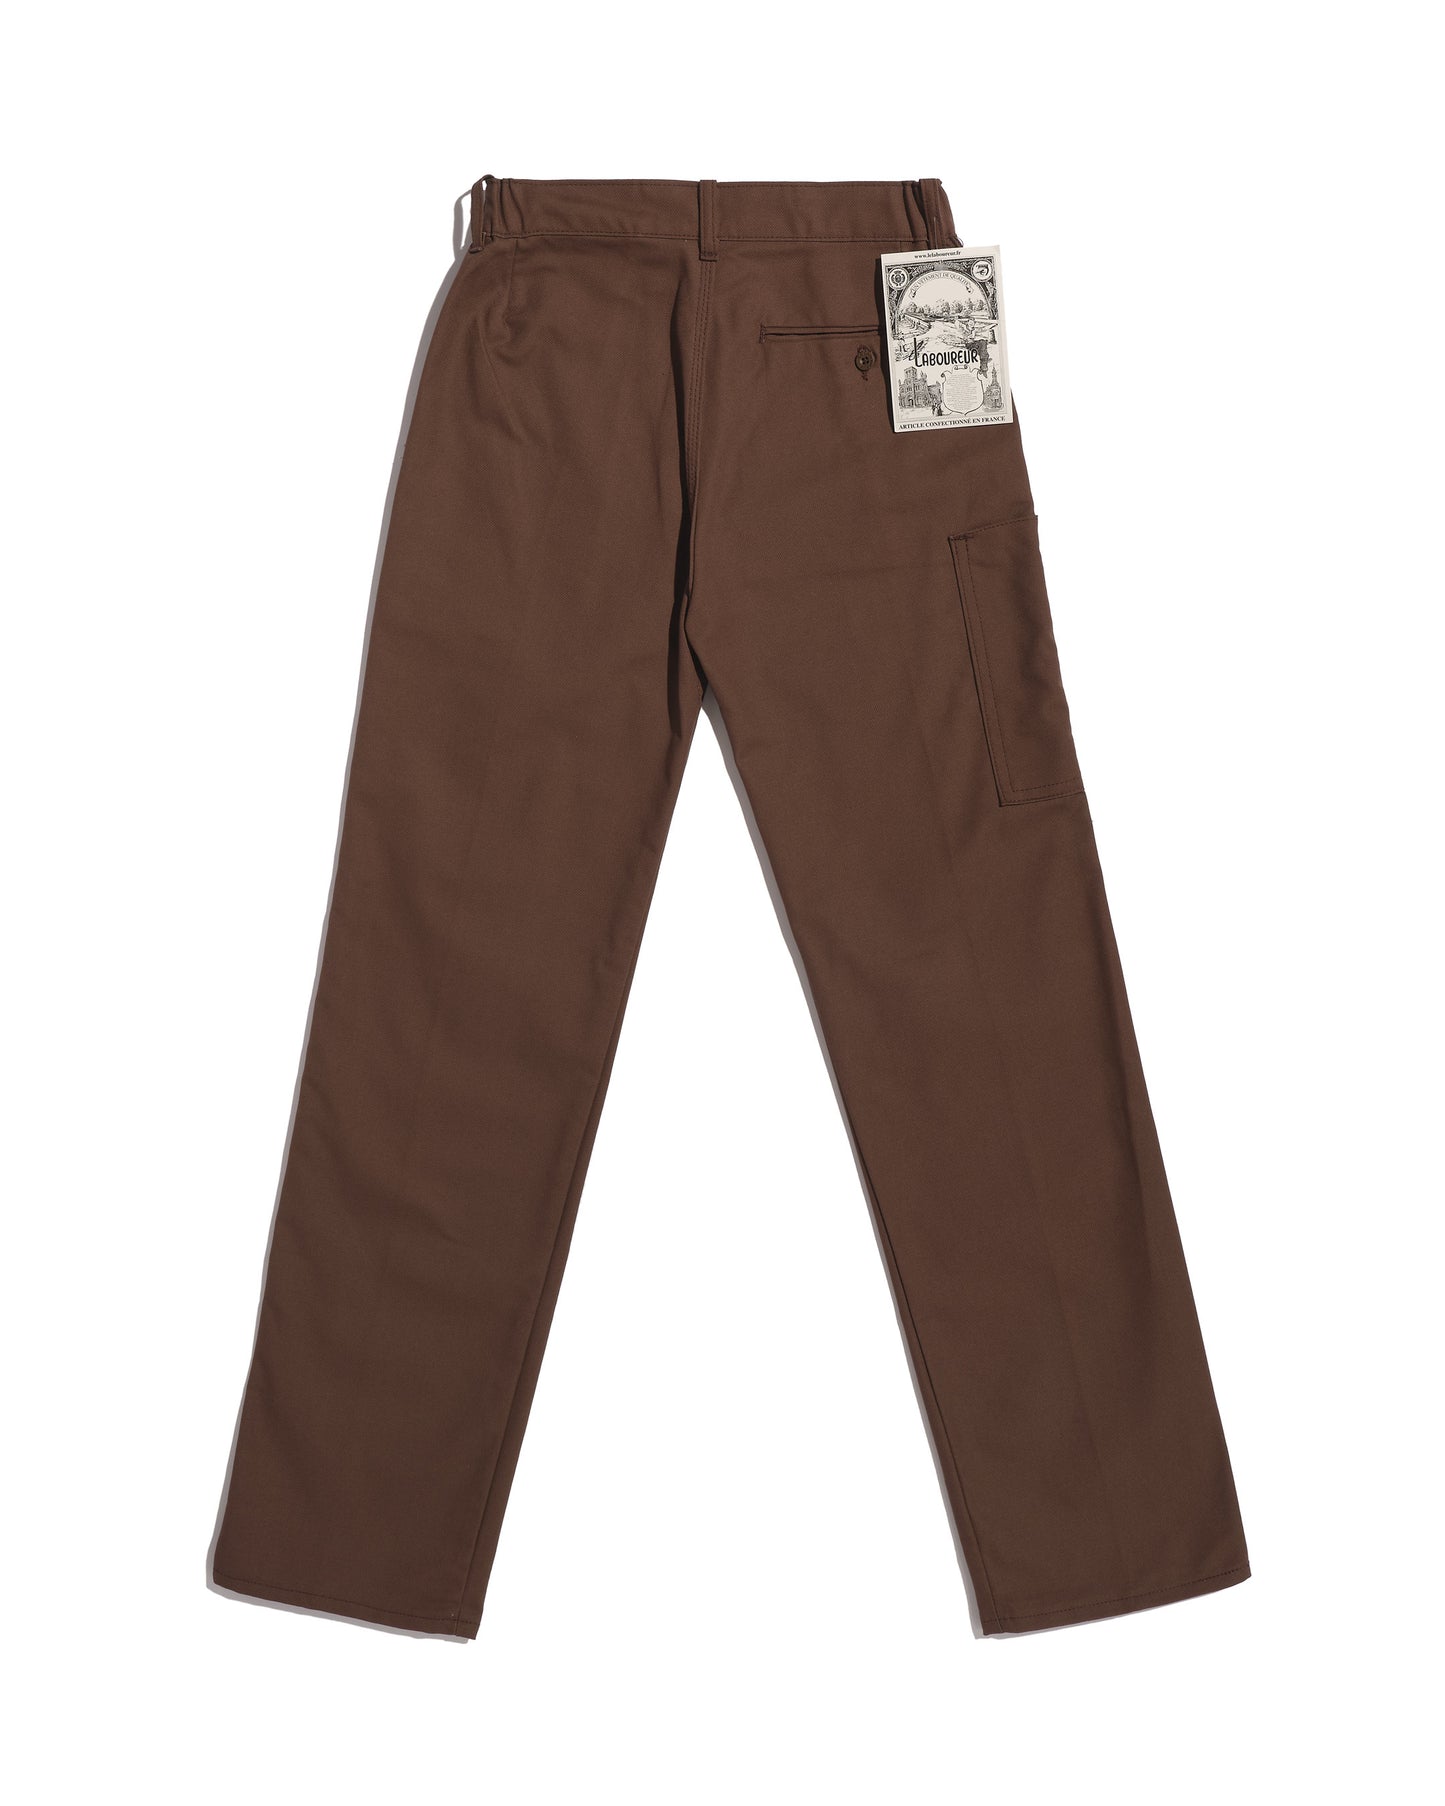 Straight brown work pants (End of series)